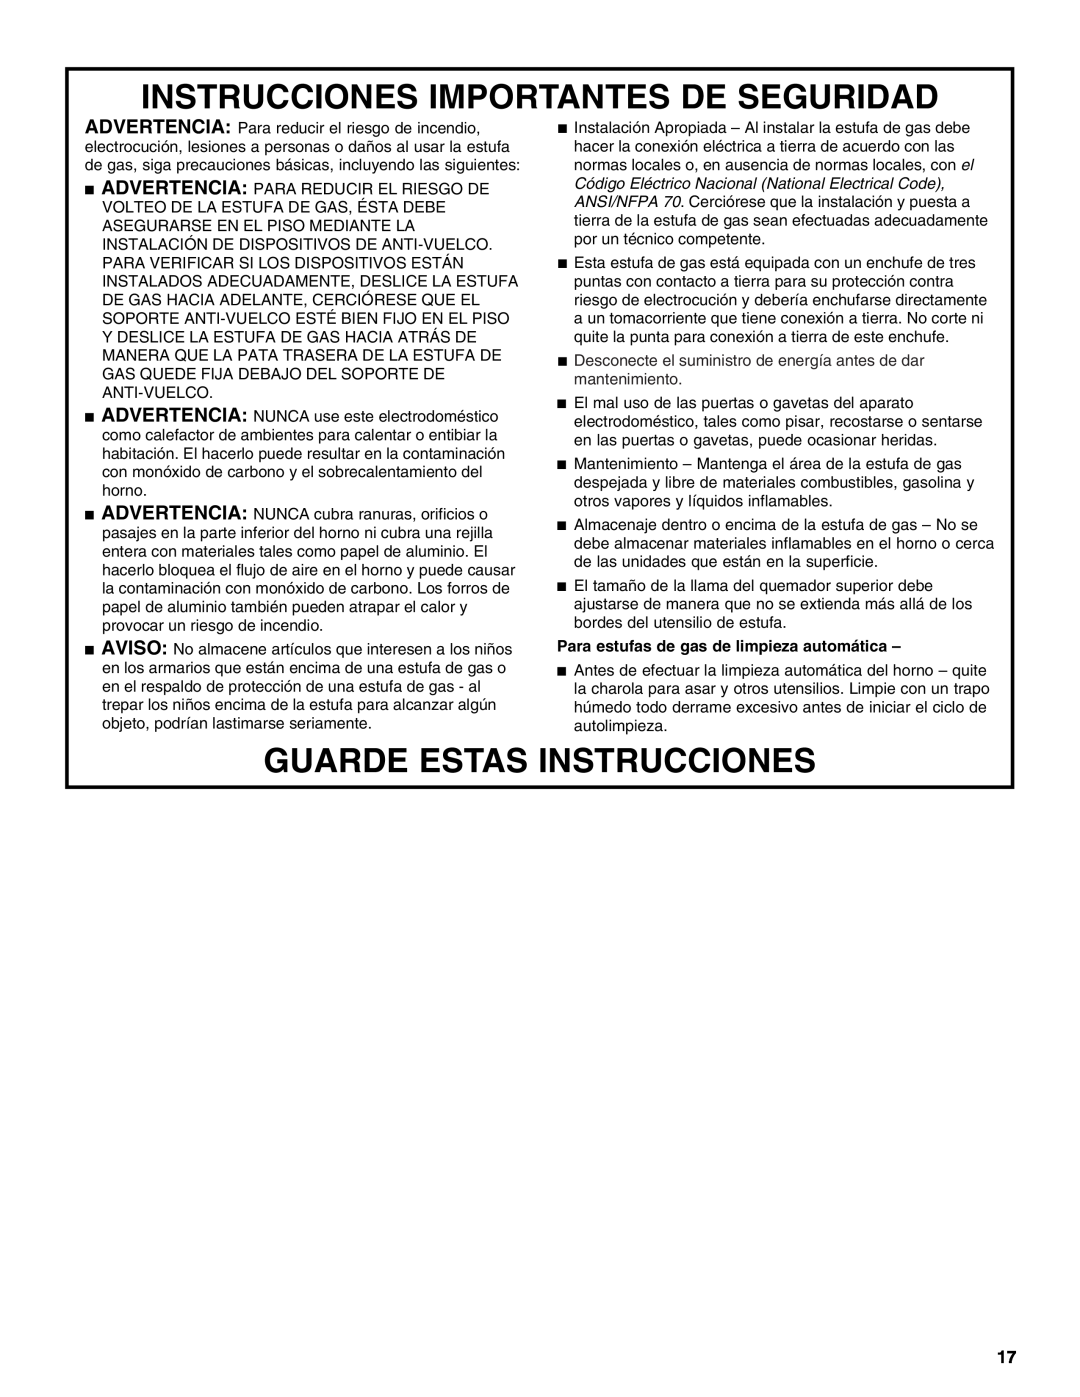 Estate W10173754A manual Instrucciones Importantes De Seguridad, Guarde Estas Instrucciones 